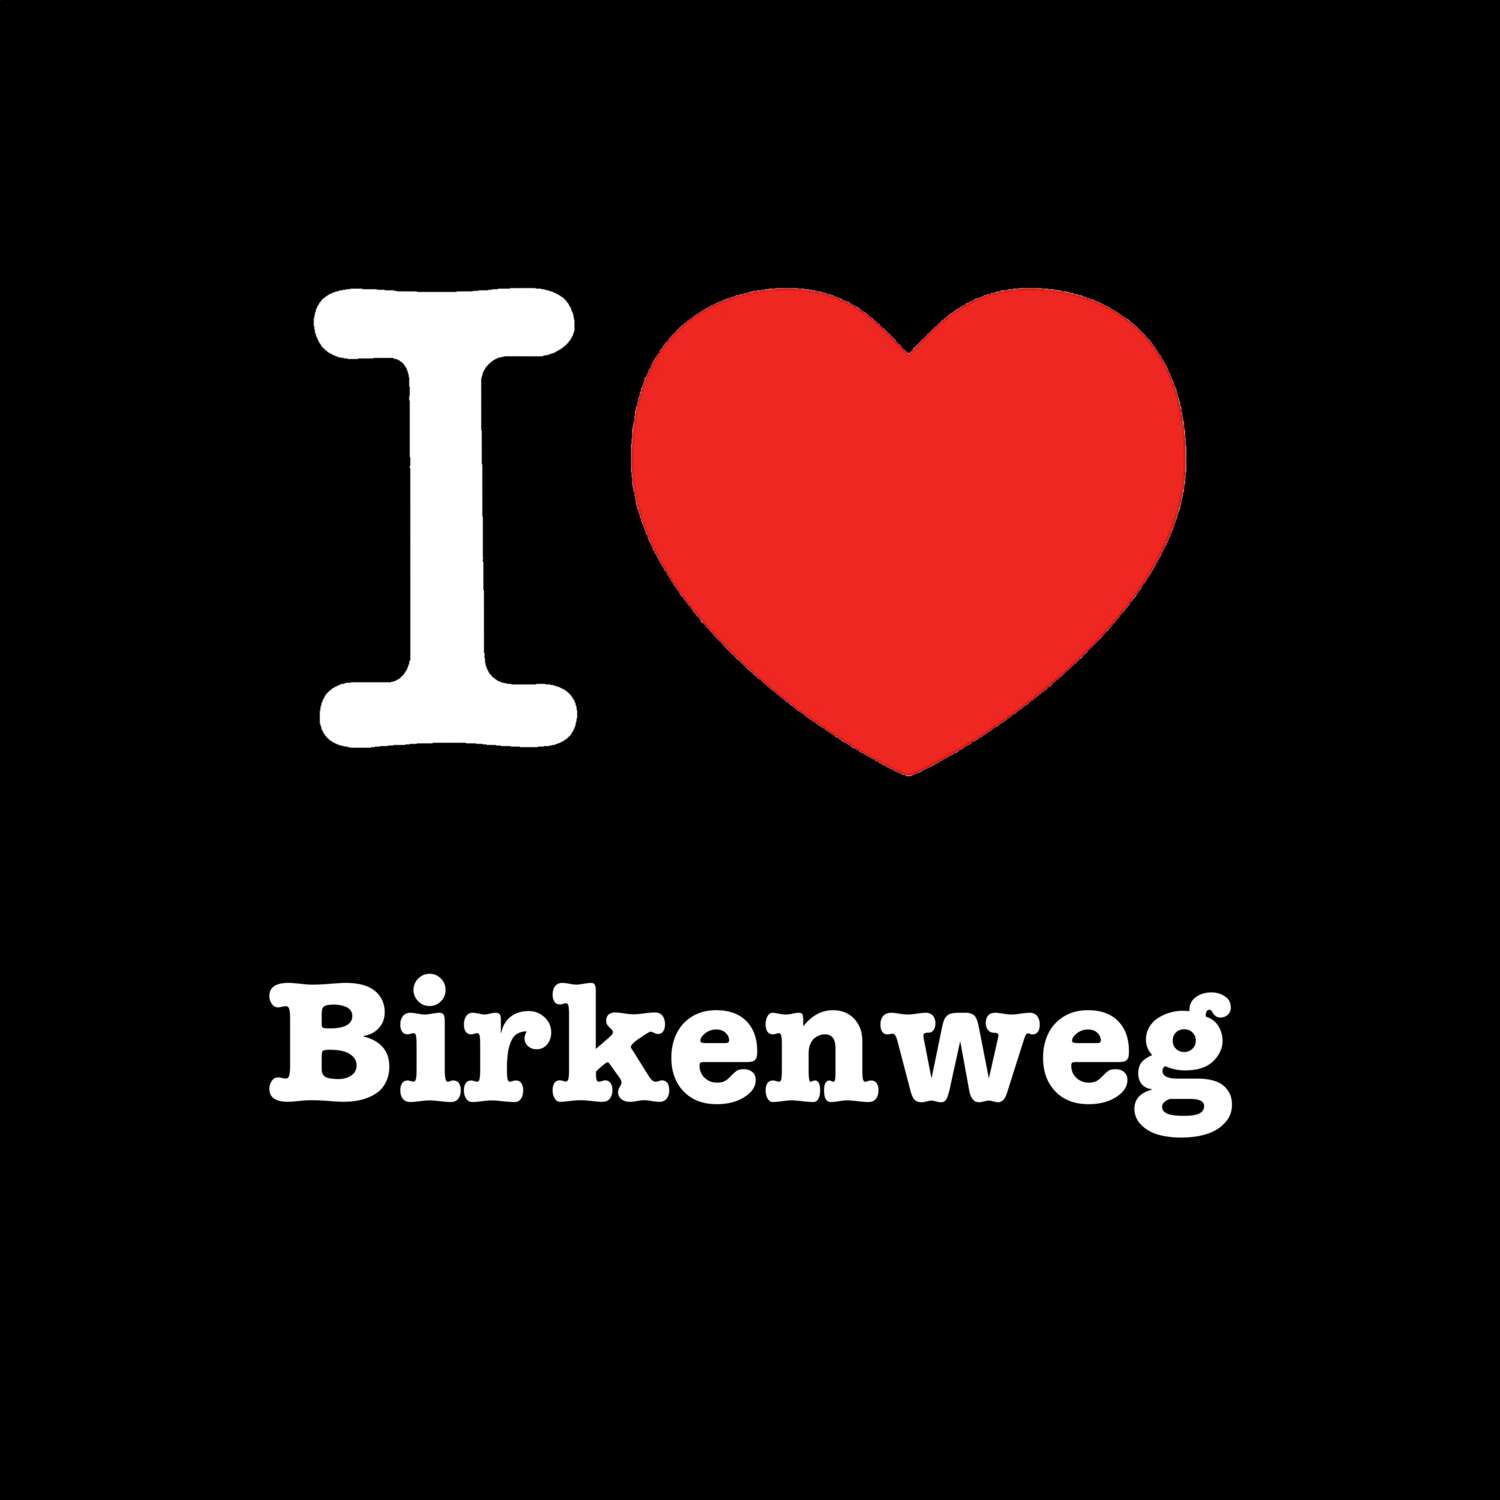 Birkenweg T-Shirt »I love«